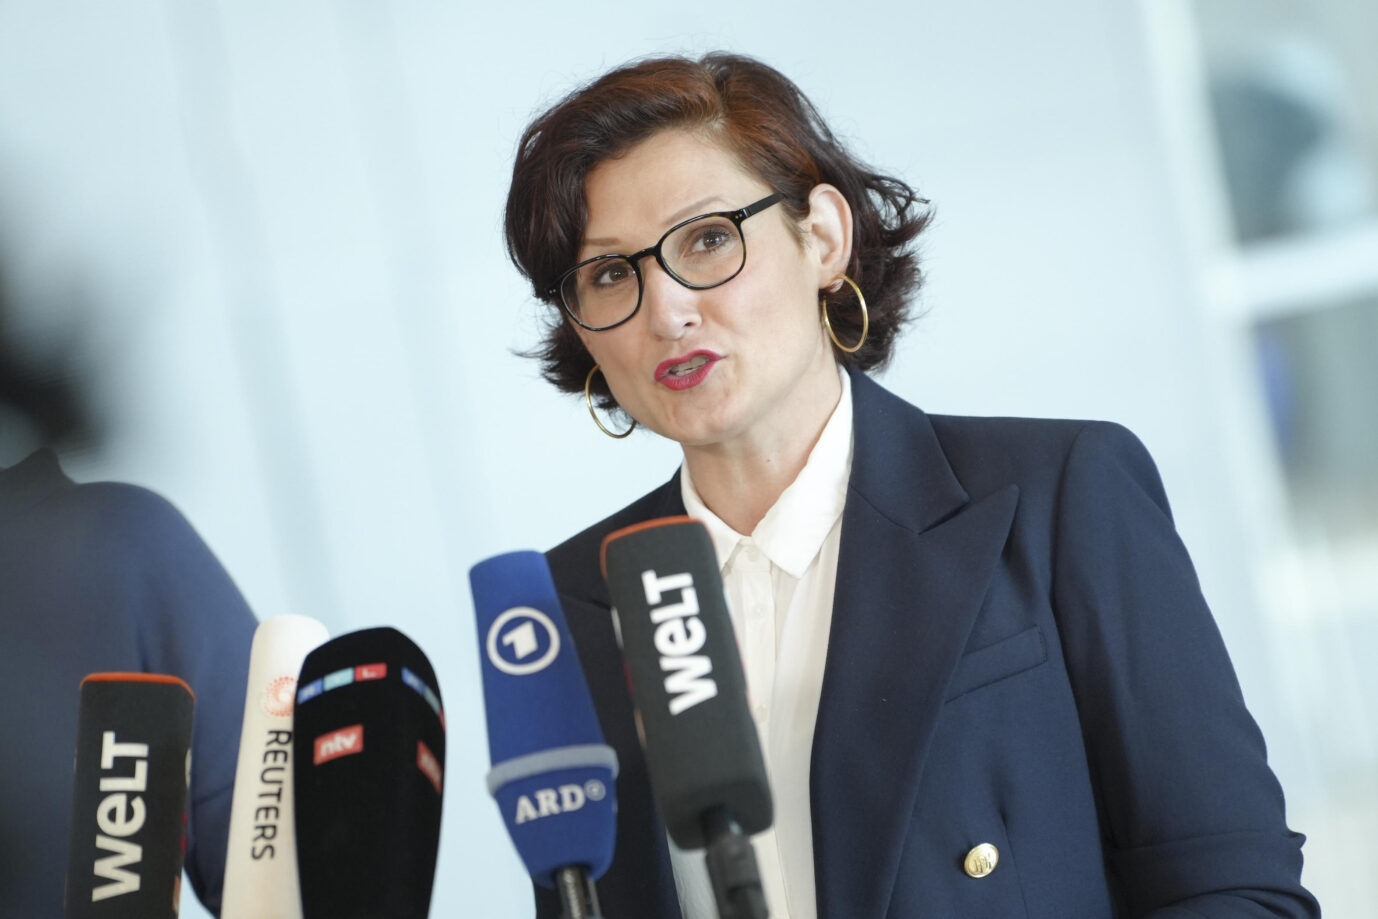 Ferda Ataman nach der Wahl im Bundestag zur neuen Bundesbeauftragten für Antidiskriminierung